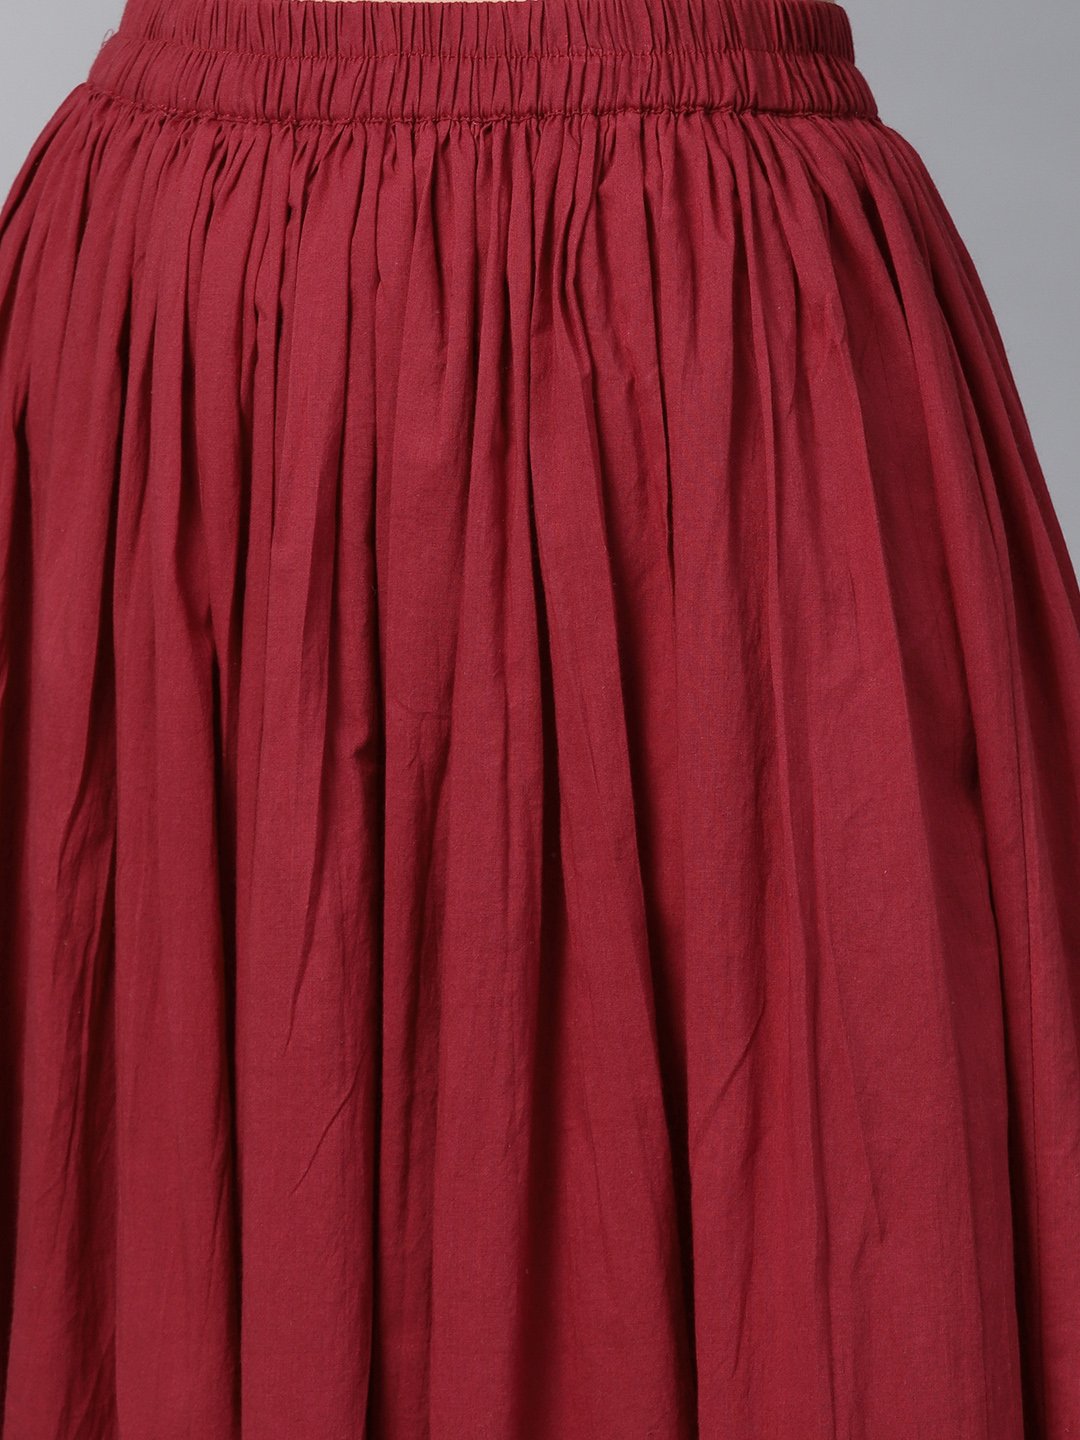 Women's Cream Multi Colored Kurta Set With Solid Dark Maroon Skirt - Nayo Clothing